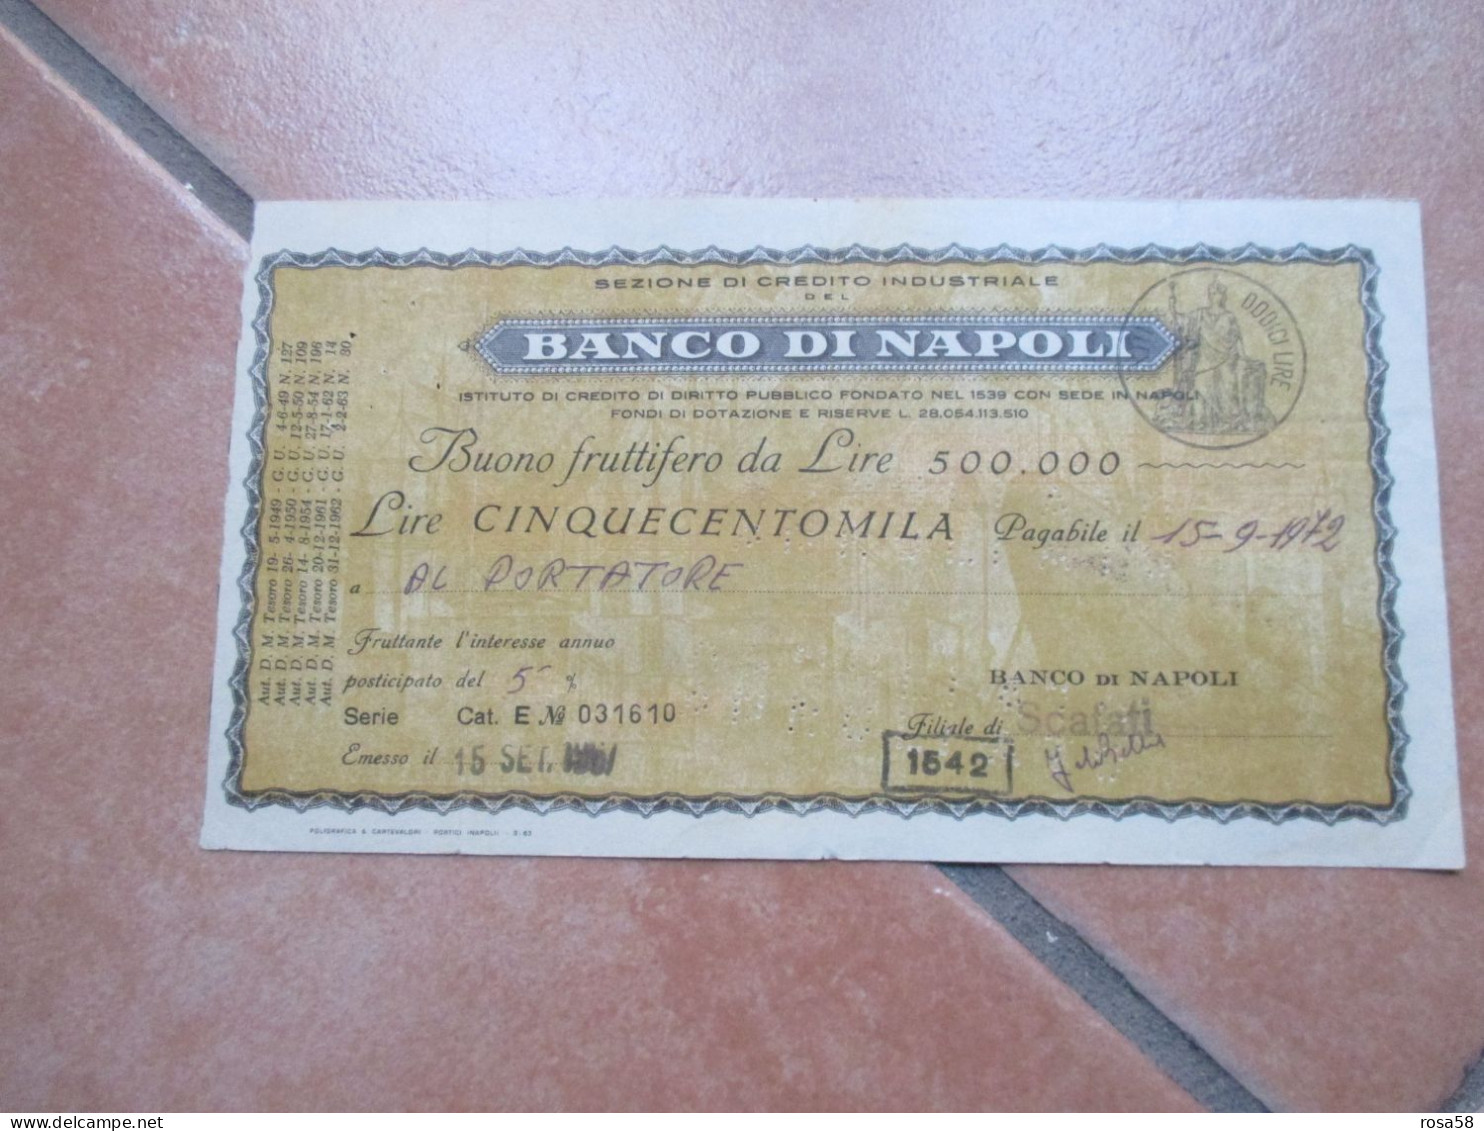 1967 BANCO Di NAPOLI Buono Fruttifero Da Lire 500.000 Interesse Annuo Posticipato Del 5% - Bank & Versicherung